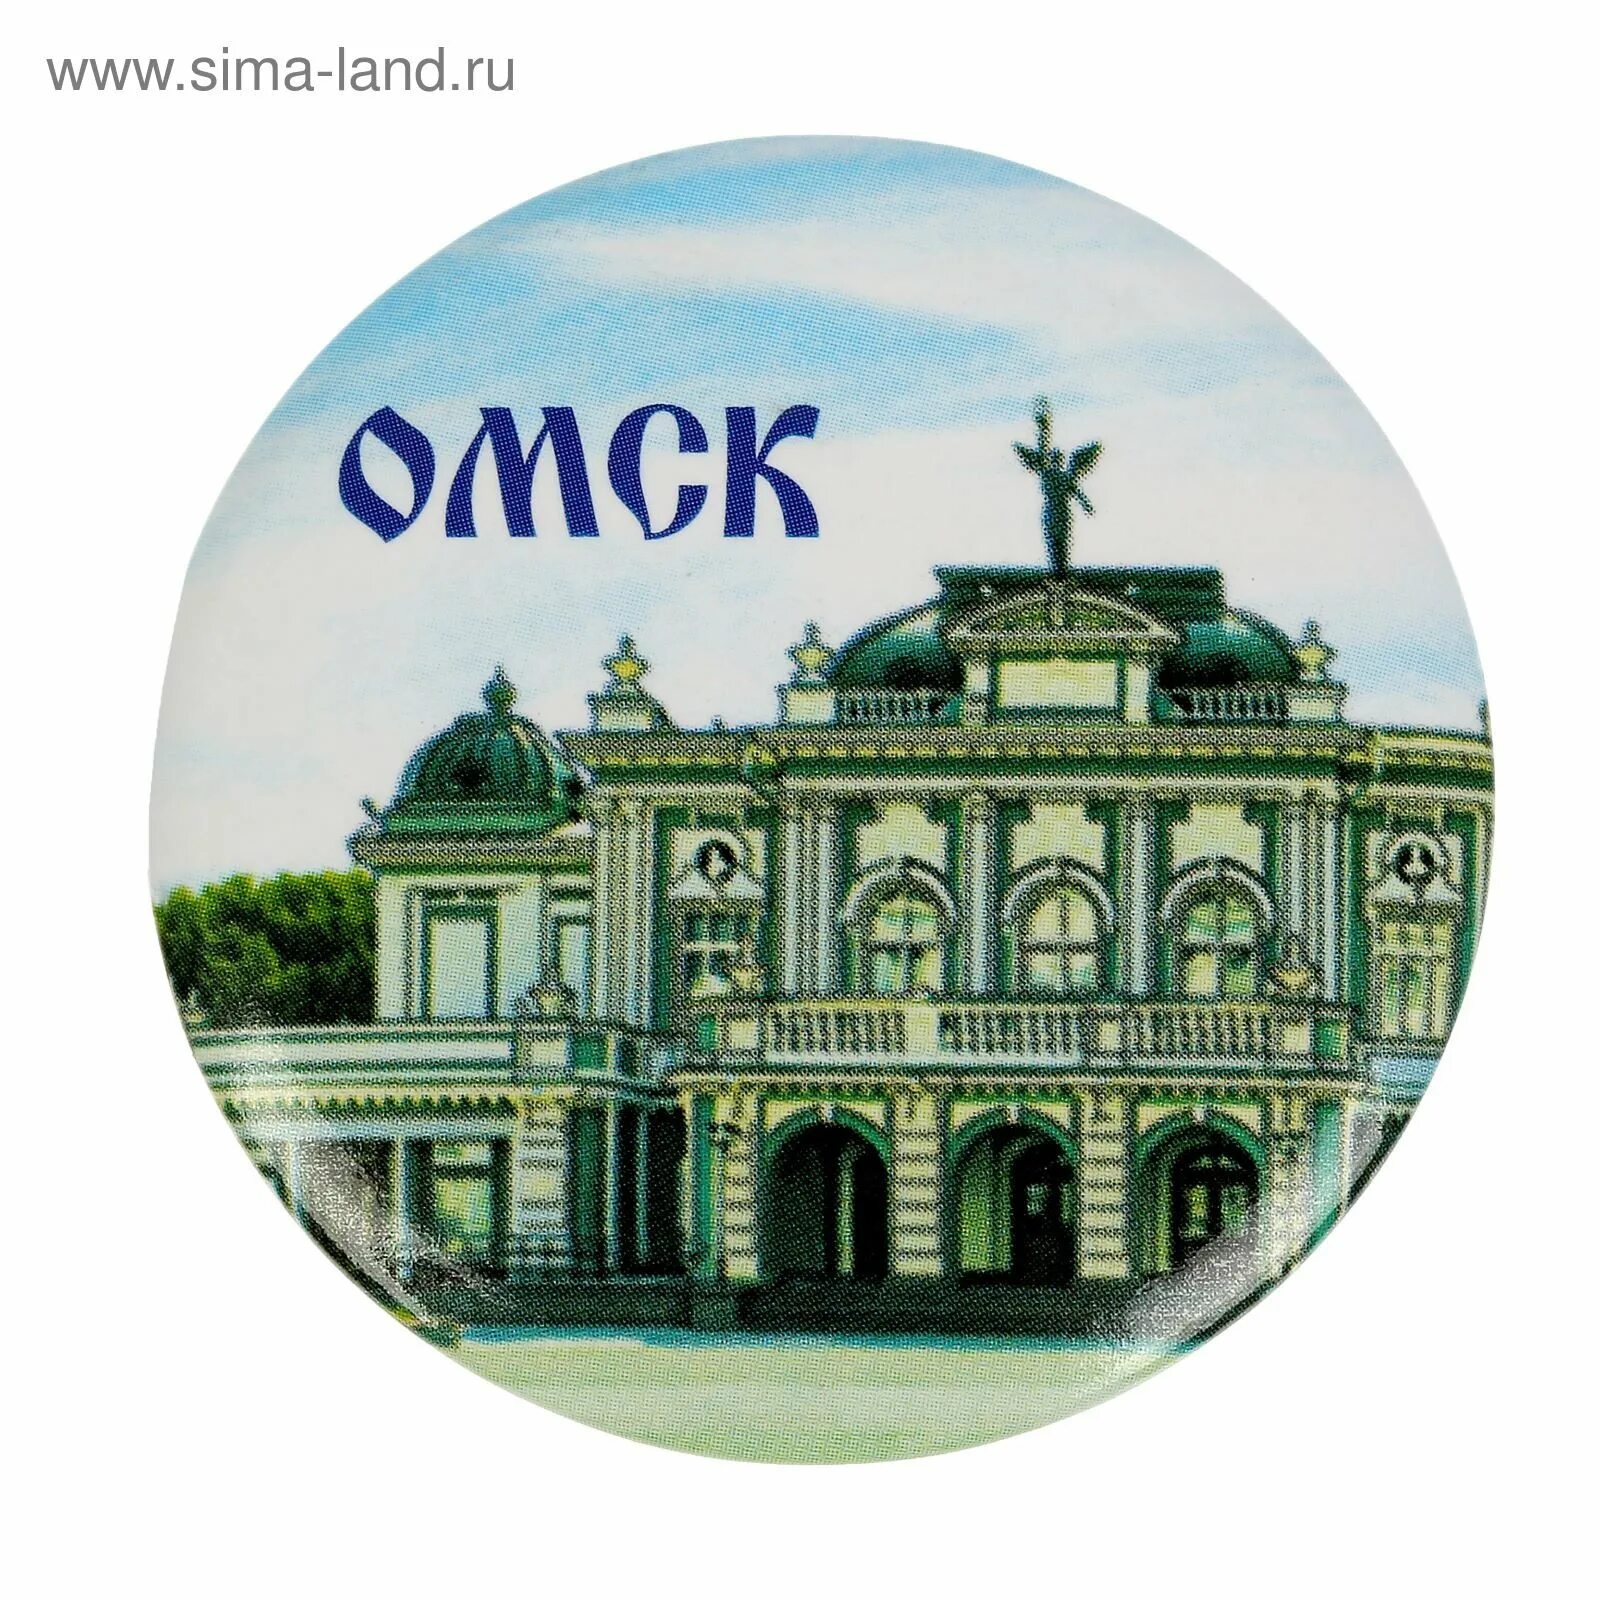 Где купить в городе омск. Омск надпись. Город Омск надпись. Омск логотип города. Достопримечательности Омска.